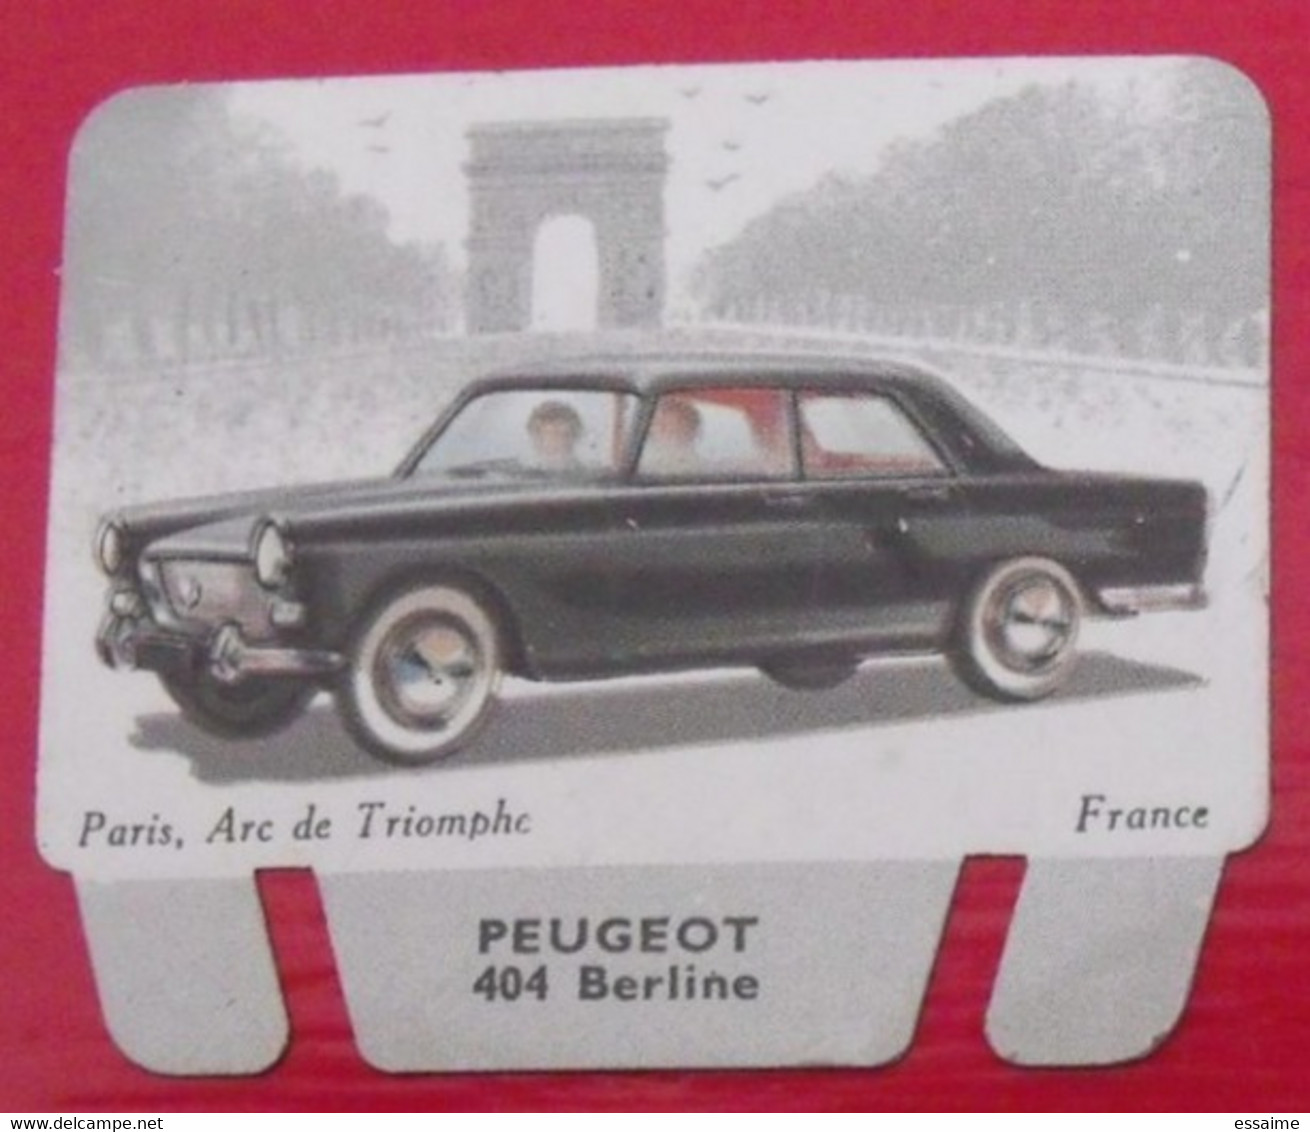 Plaque Peugeot 404. N° 2. Les Grandes Marques D'automobiles. Chocolat Cafés Martel Mota. Plaquette Métal Vers 1960 - Plaques En Tôle (après 1960)